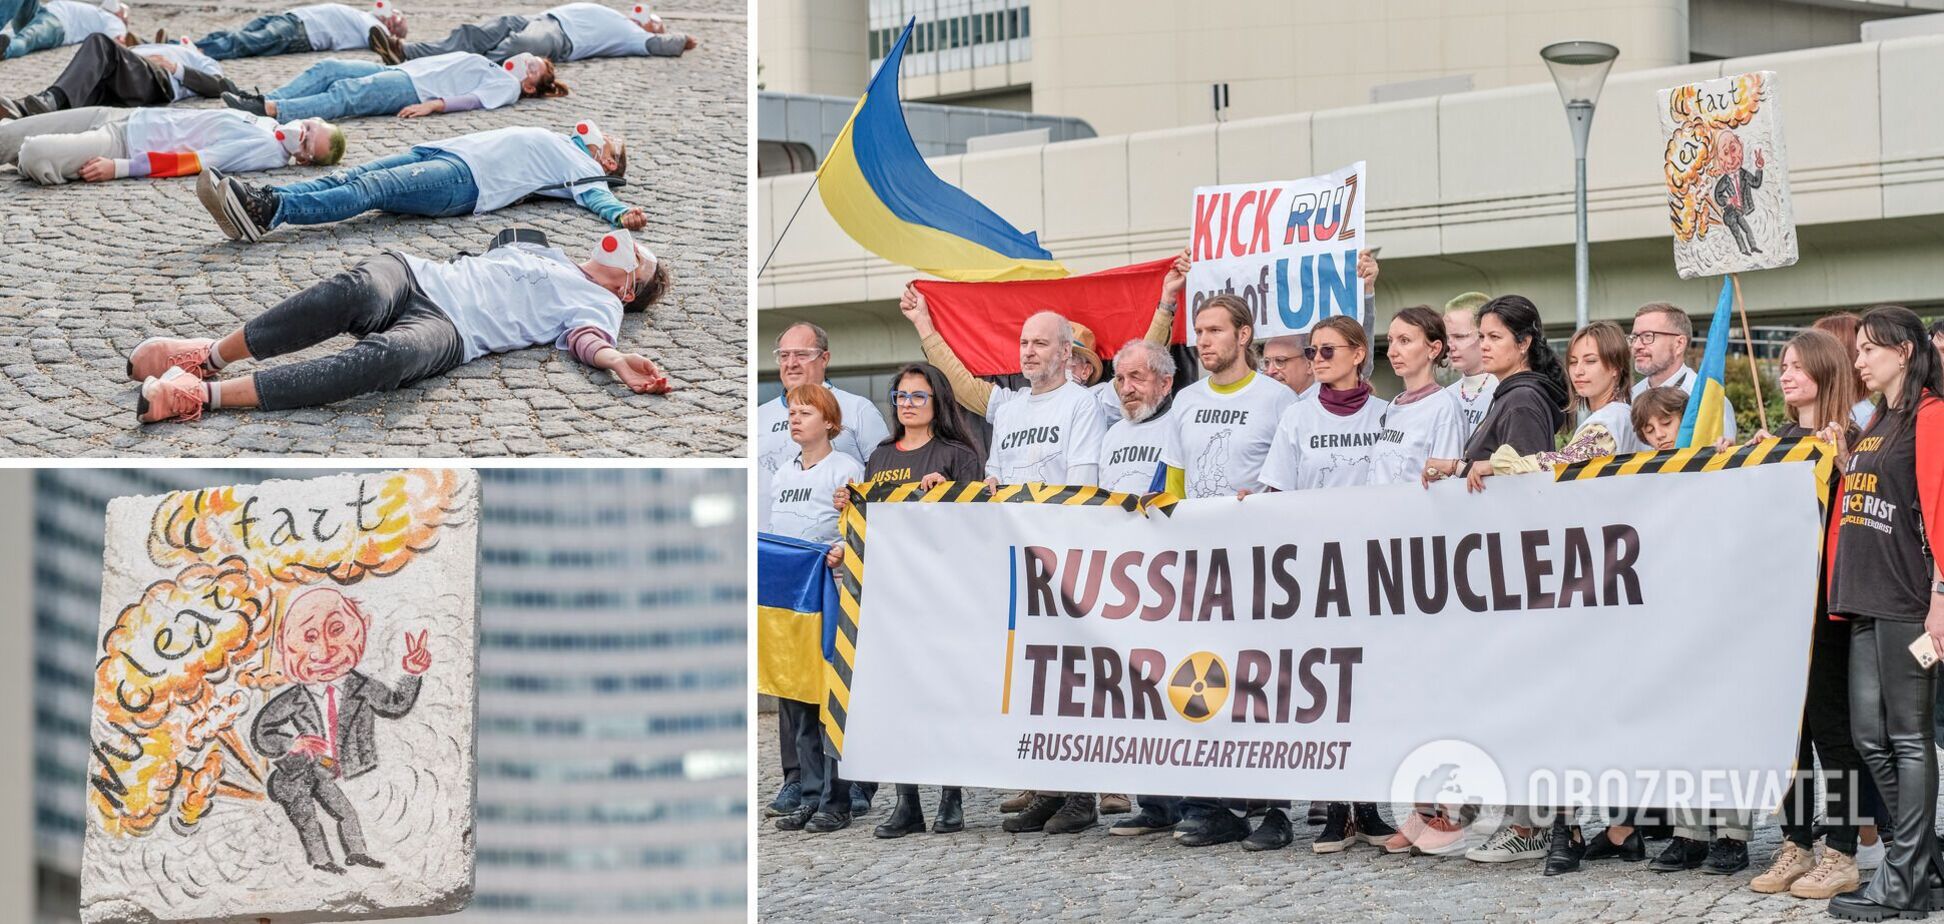 'Вкриті ядерним попелом': у Відні учасники акції проти членства Росії в МАГАТЕ влаштували моторошний перформанс. Фото